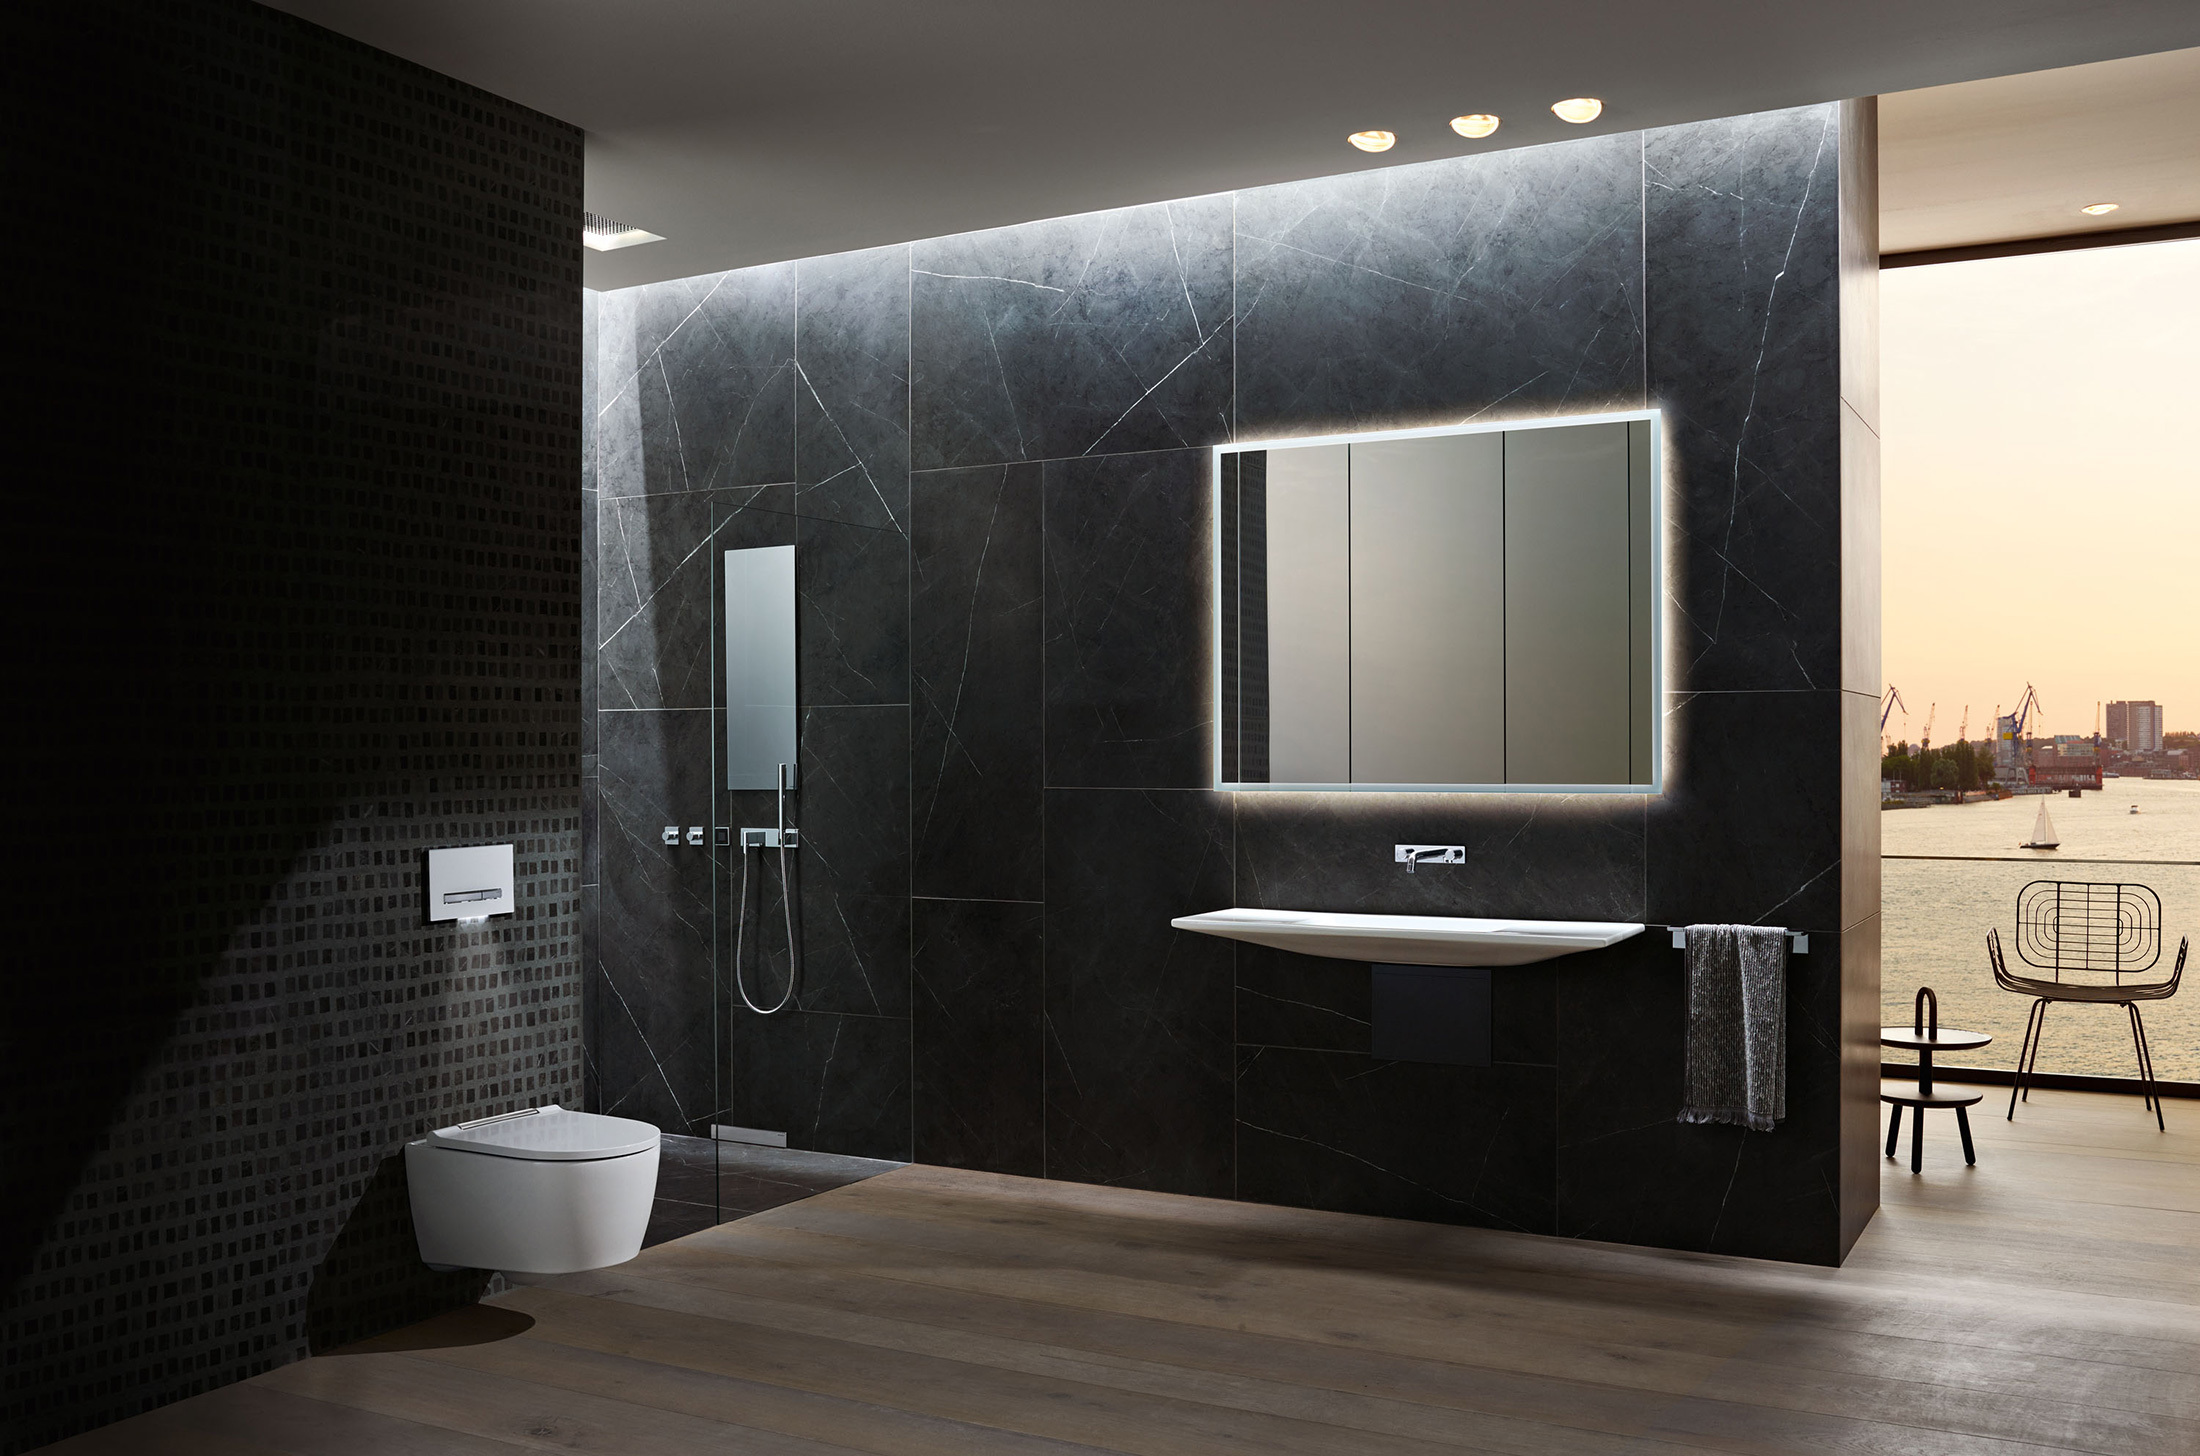 Modernes Badezimmer imit beöuchtetem WC, Spiegel, Dusche und Waschtisch.